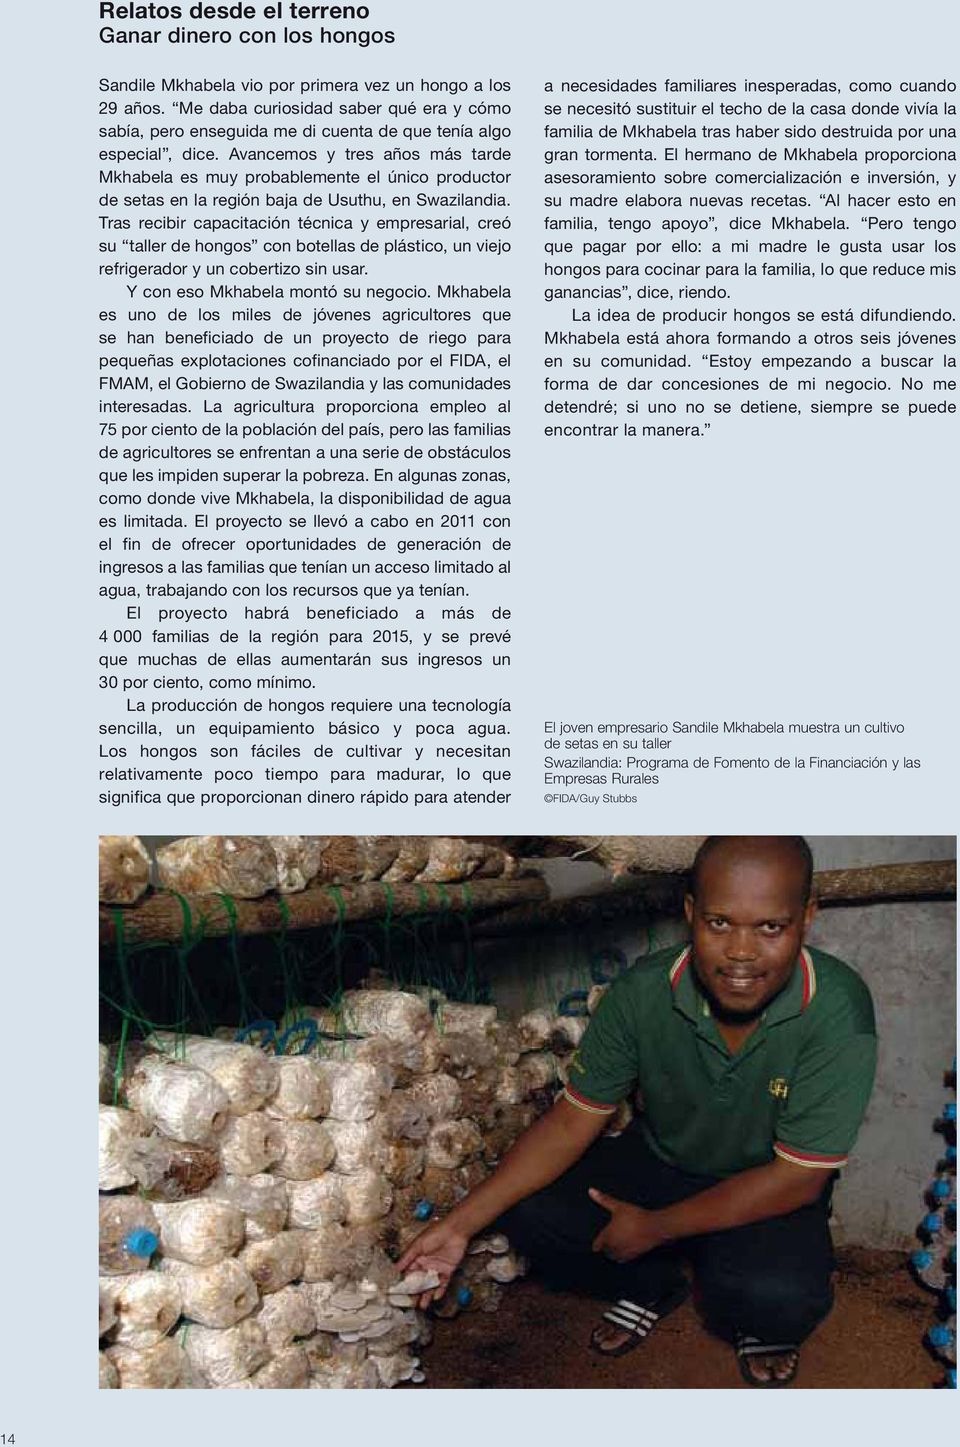 Avancemos y tres años más tarde Mkhabela es muy probablemente el único productor de setas en la región baja de Usuthu, en Swazilandia.